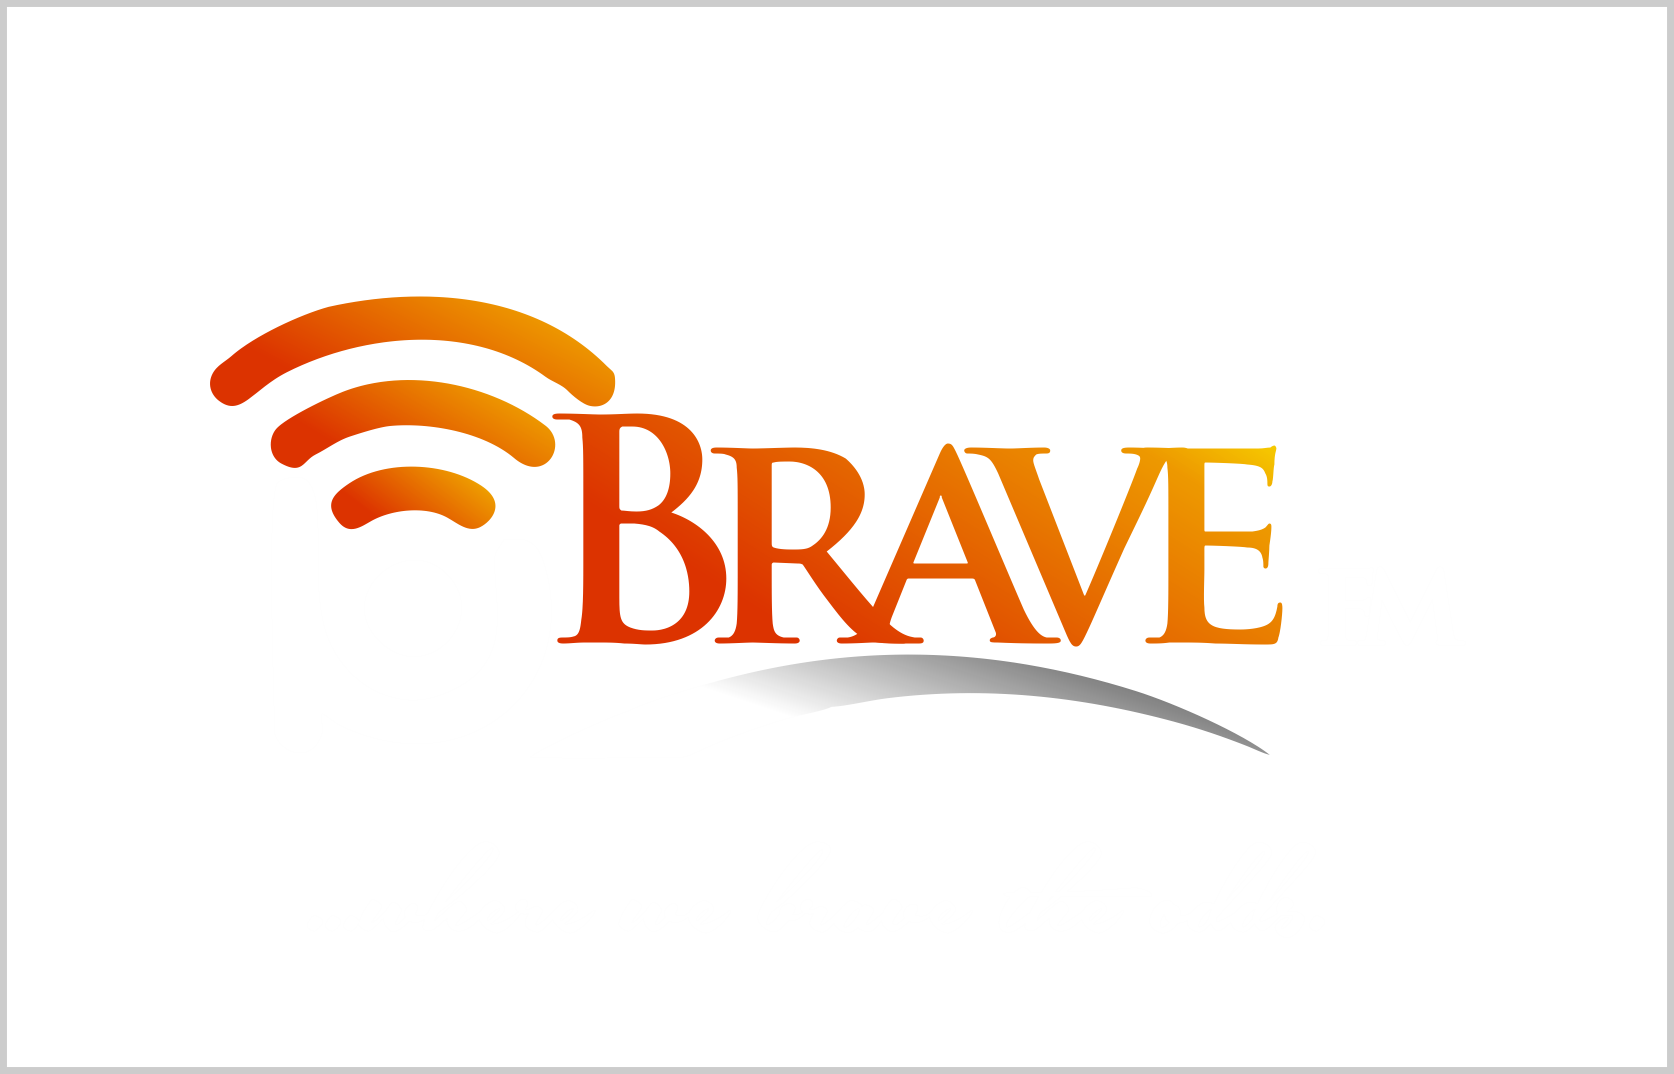 BraveFM NG